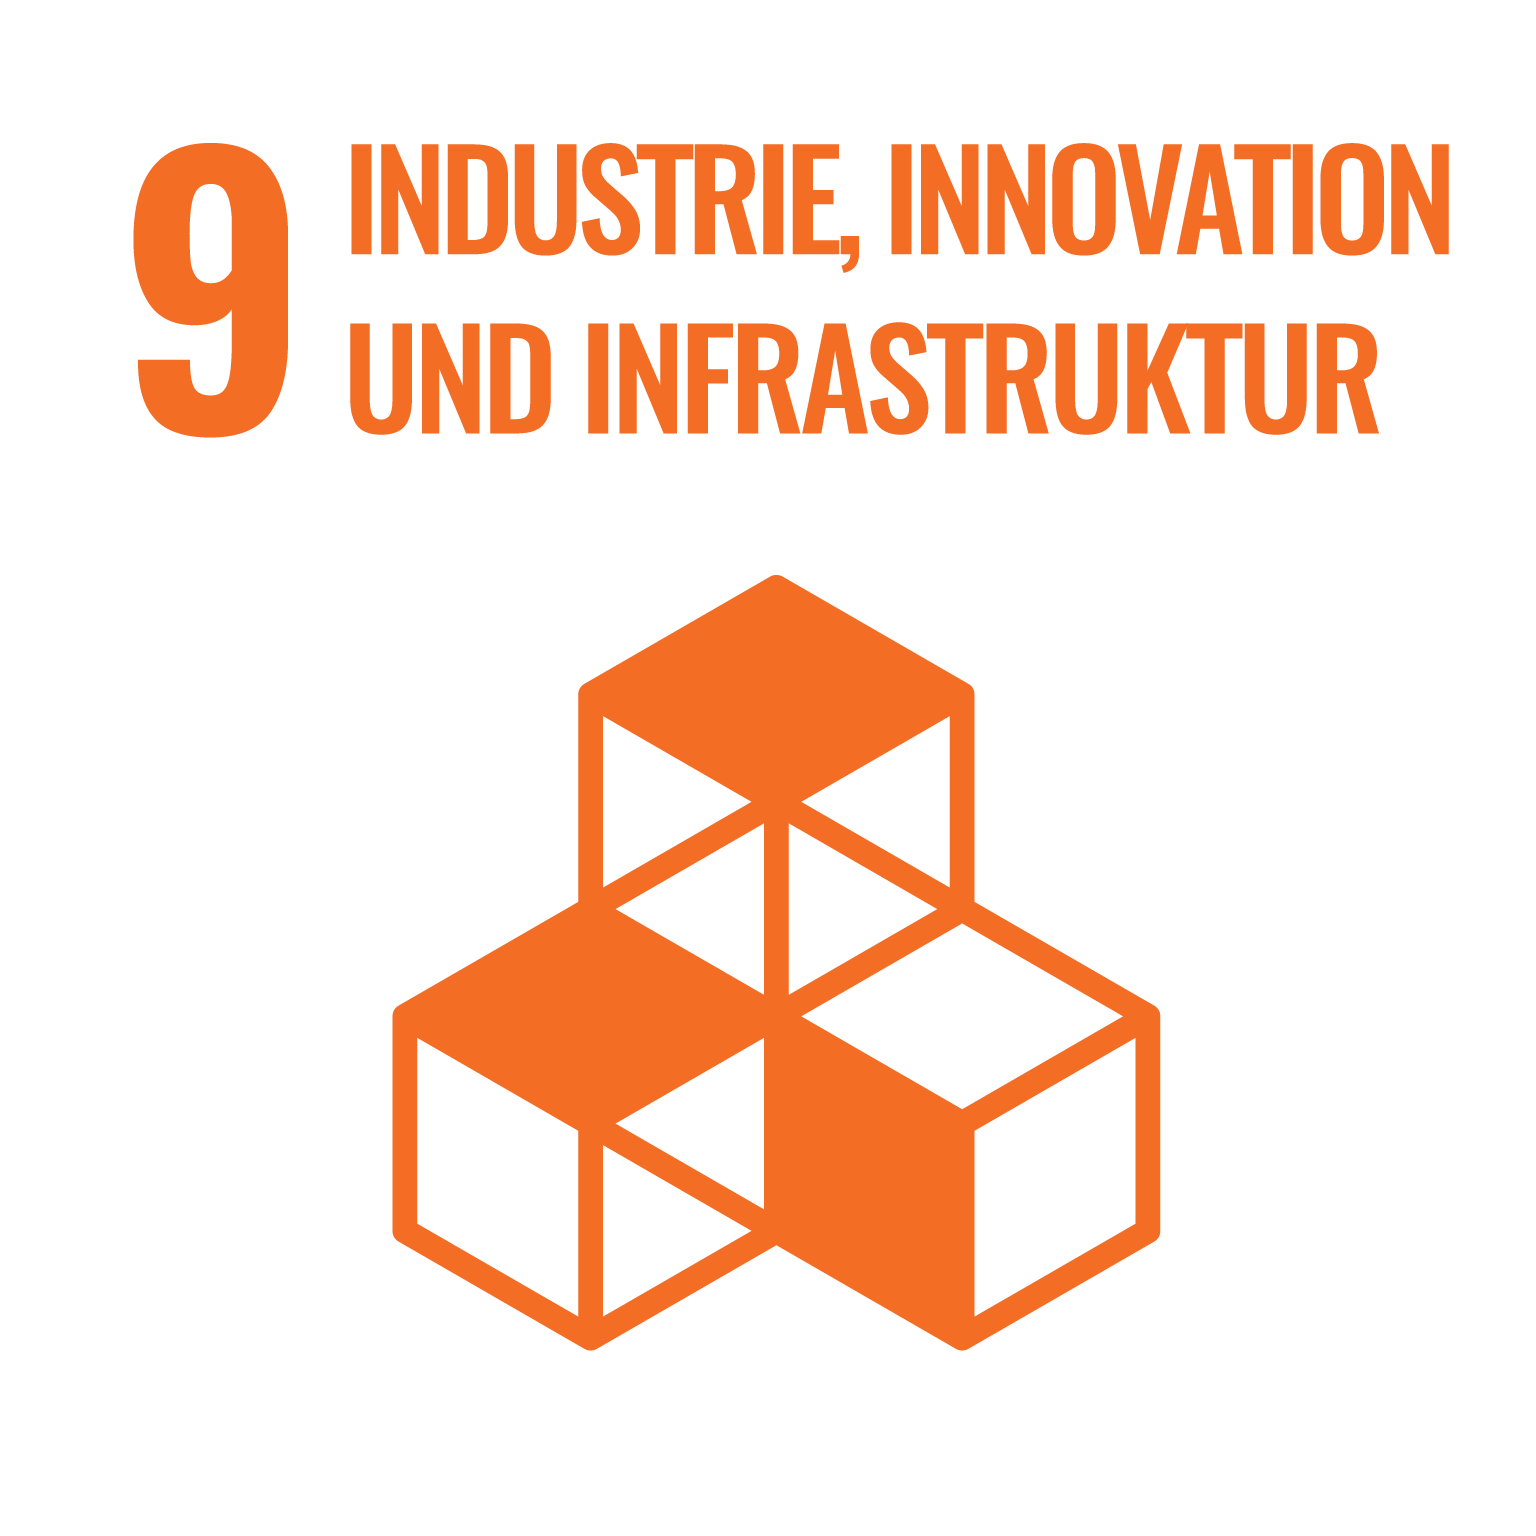 9. Industrie, Innovation und Infrastruktur